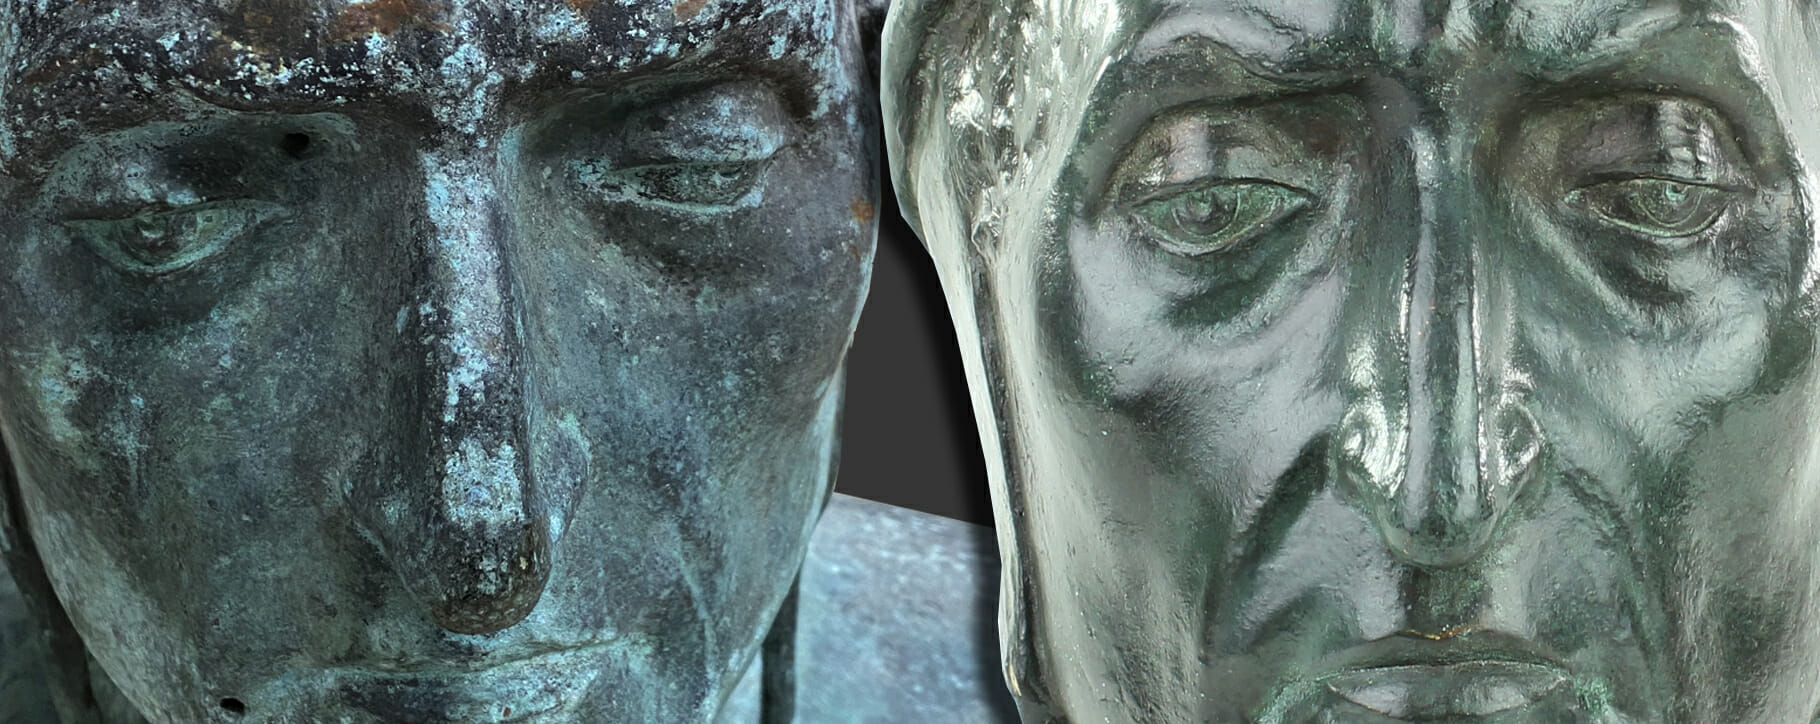 Tarnishing bronze bust